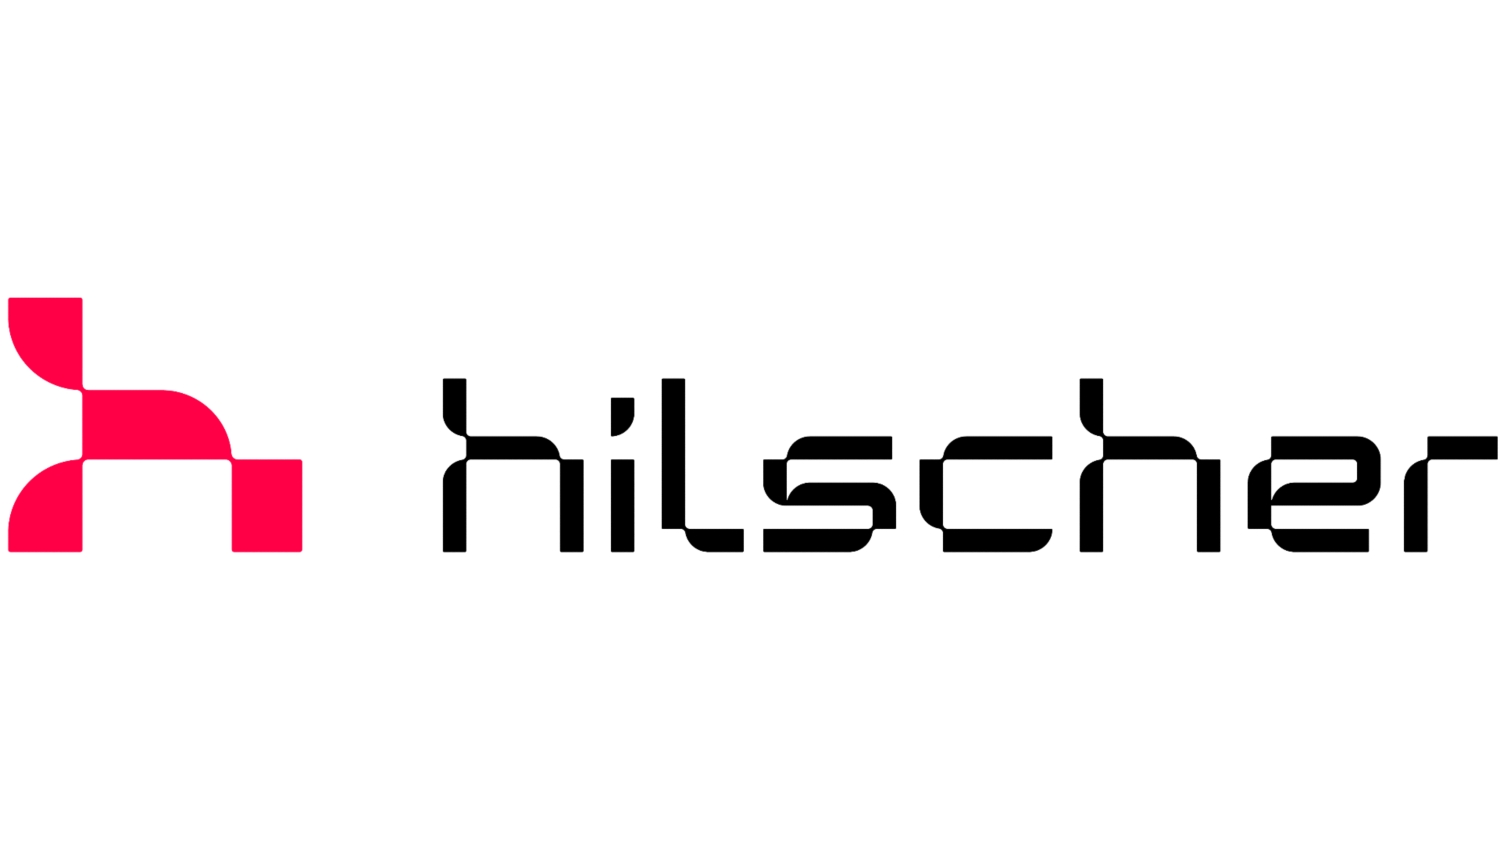 Logo Hilscher